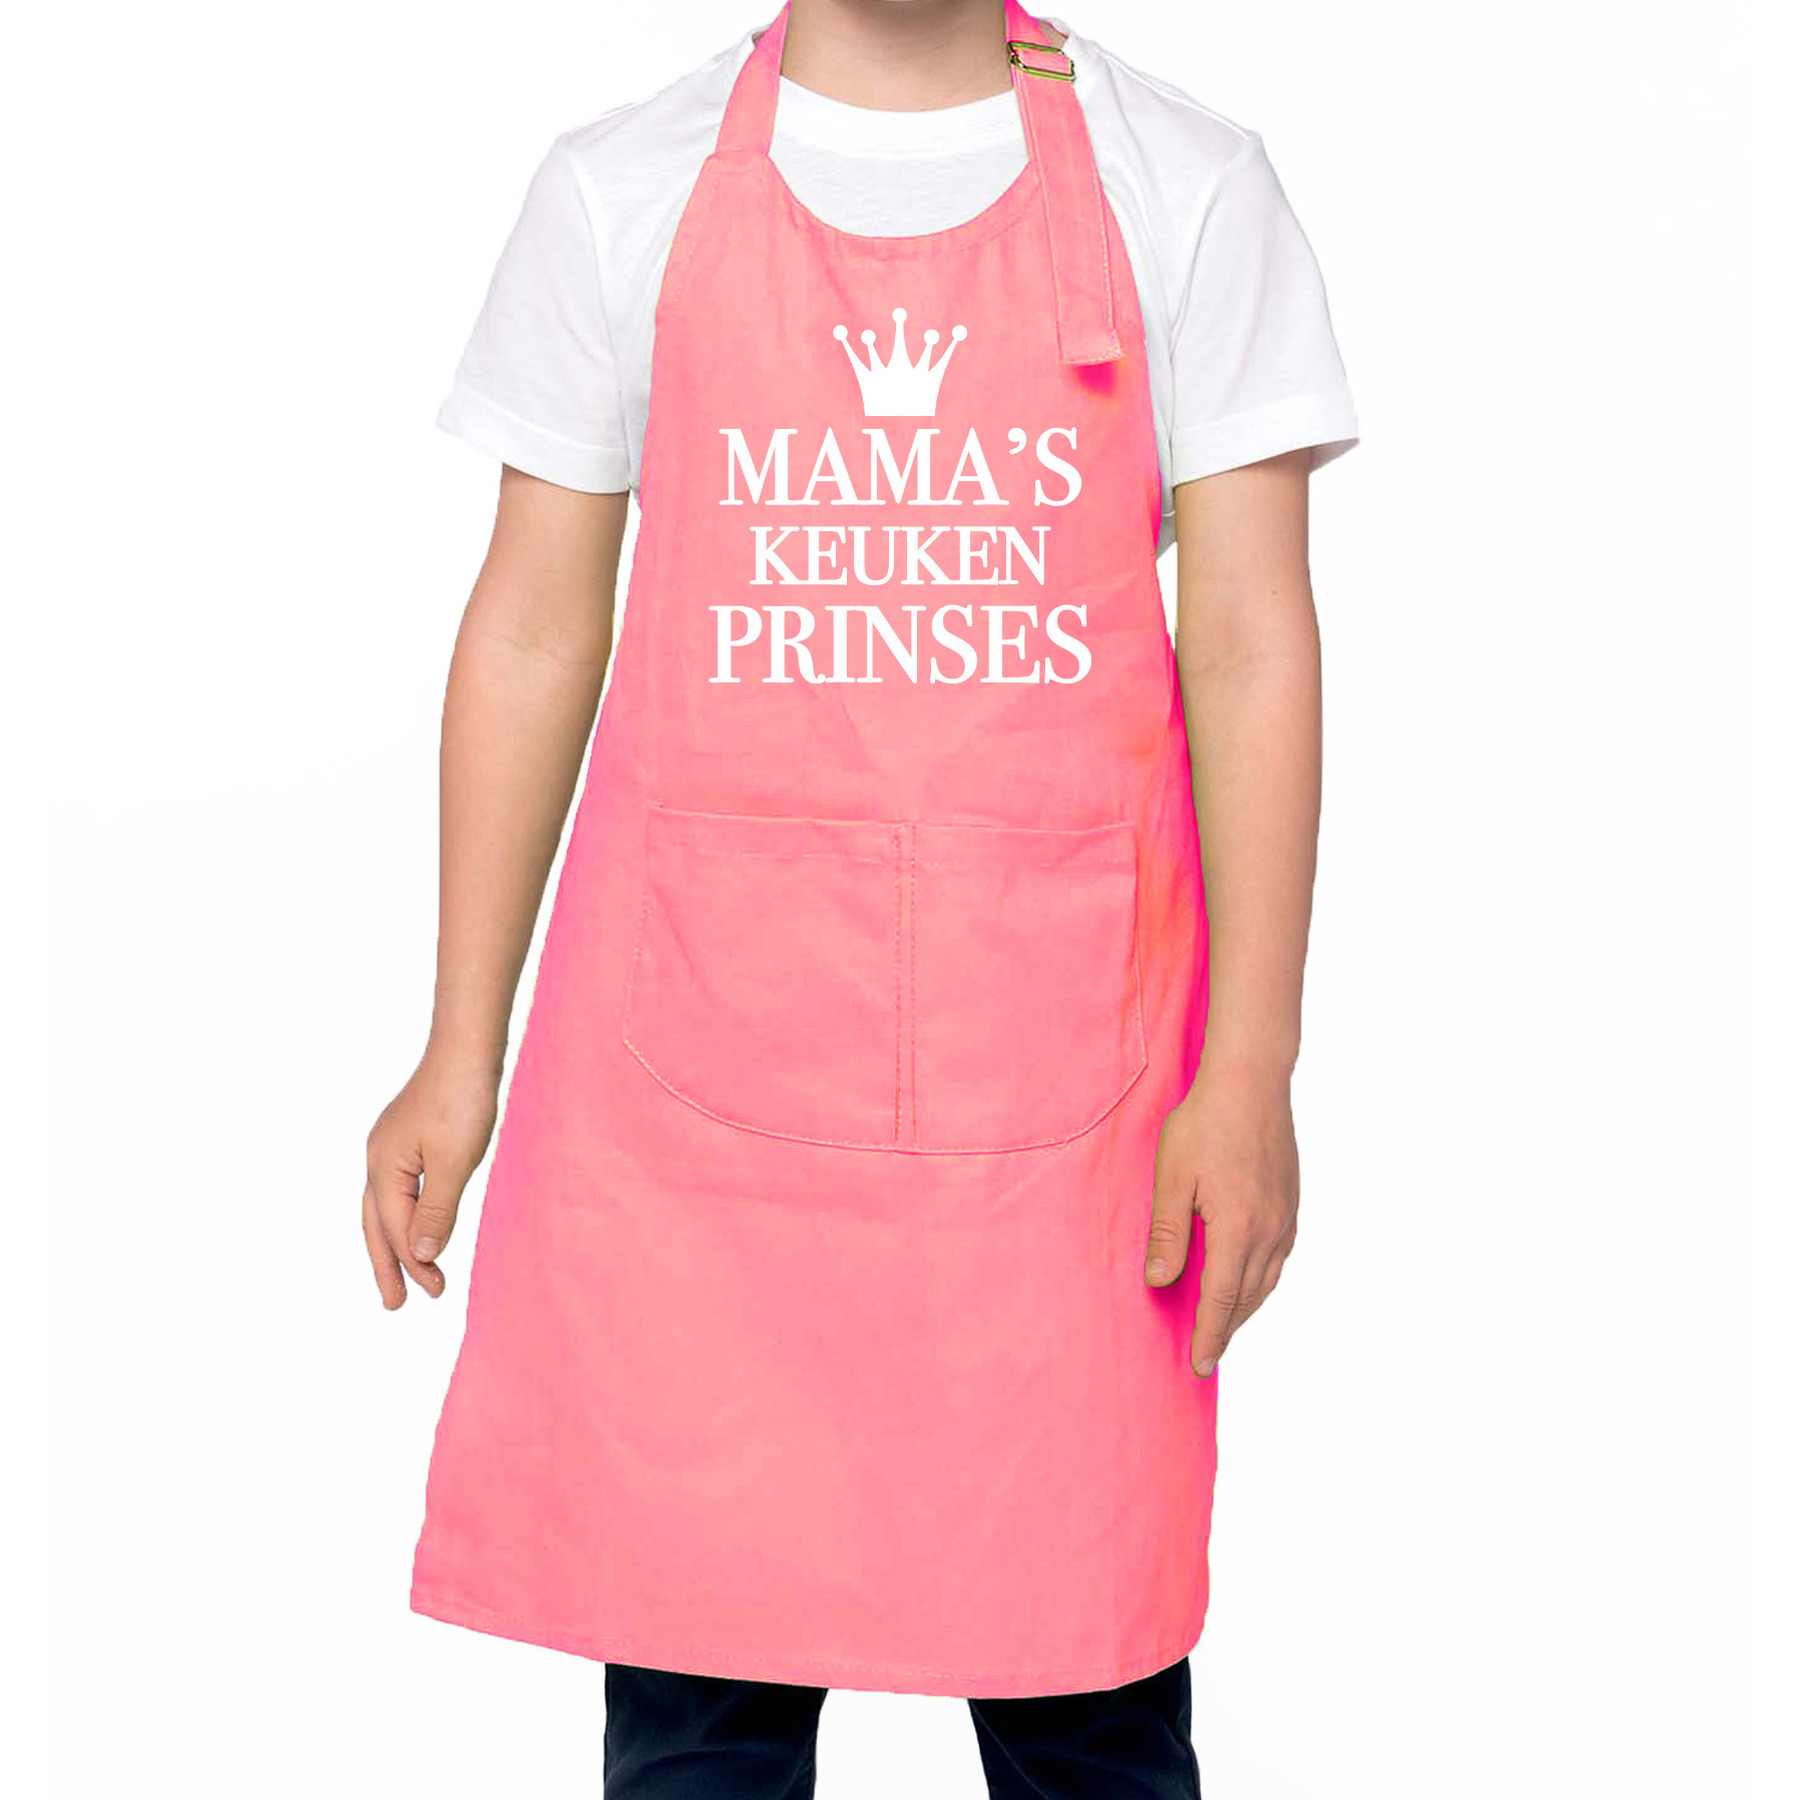 Mama s keukenprinses Keukenschort kinderen/ kinder schort roze voor meisjes